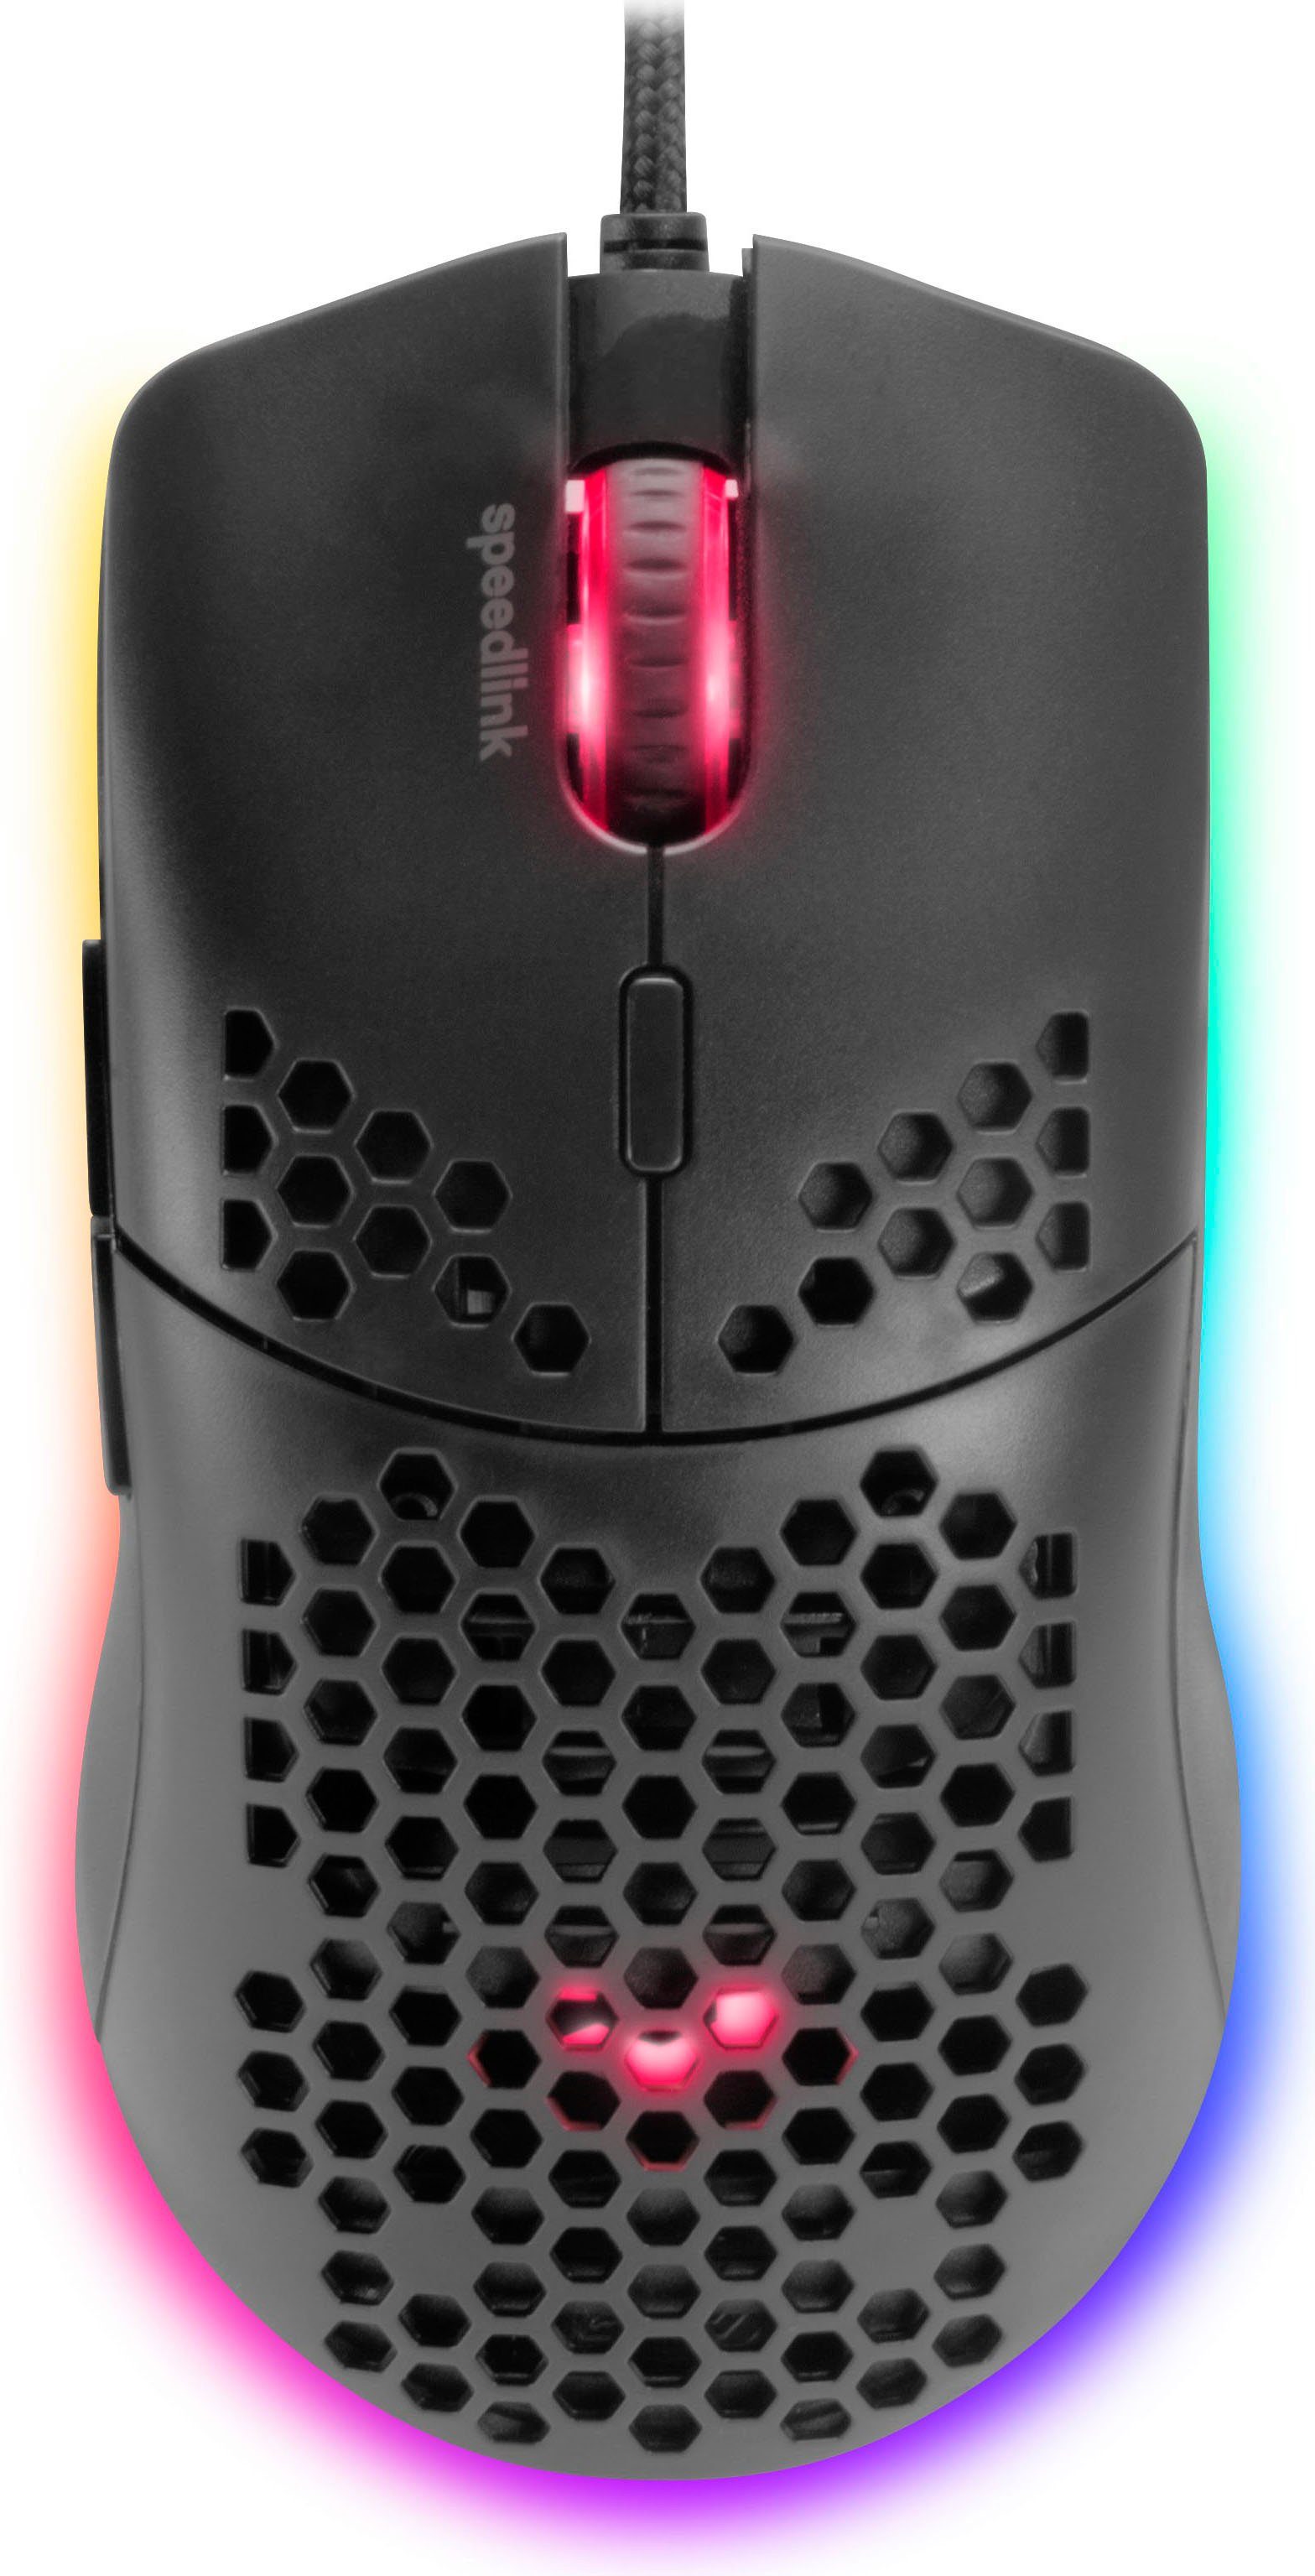 Speedlink SKELL Gaming-Maus schwarz leicht, (extrem beleuchtet)